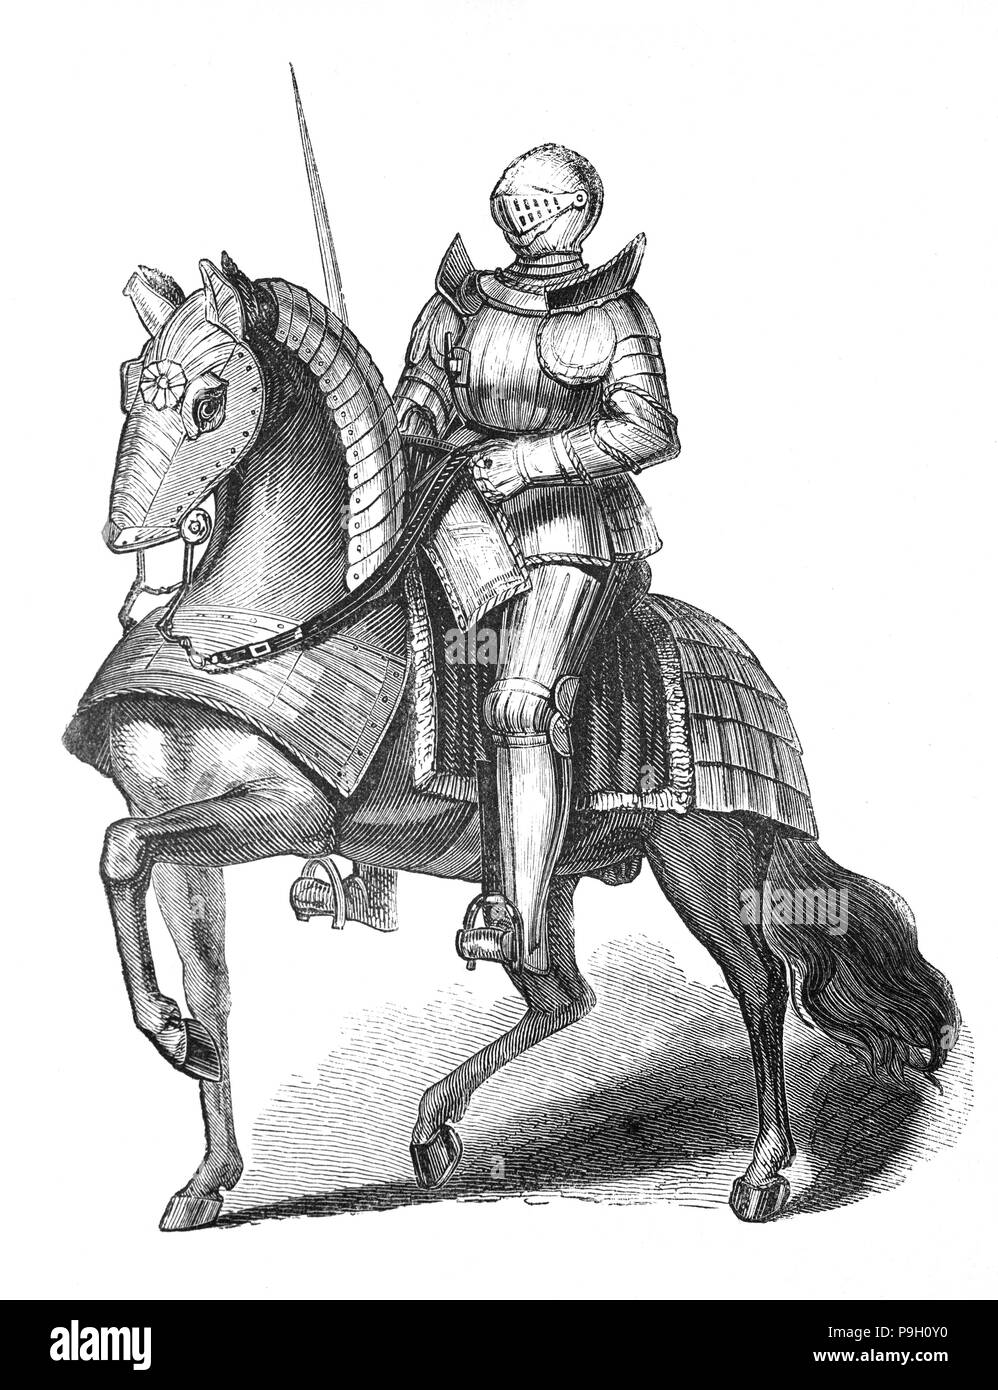 Enrico VII (1457 - 1509), il primo sovrano della casa di Tudor su horesback indossando full body armour. Egli divenne Re di Inghilterra e signore di Irlanda a seguito del suo sequestro della corona il 22 agosto 1485, quando le sue forze sconfitto re Richard III nella battaglia di Bosworth Field, il culmine delle guerre di rose. Egli è stato l'ultimo Re di Inghilterra per vincere il suo trono sul campo di battaglia. Egli ha cementato la sua rivendicazione da sposare Elisabetta di York, figlia di Edward IV e nipote di Richard III. Henry ha avuto successo nel ripristinare la potenza e la stabilità della monarchia inglese dopo la guerra civile. Foto Stock